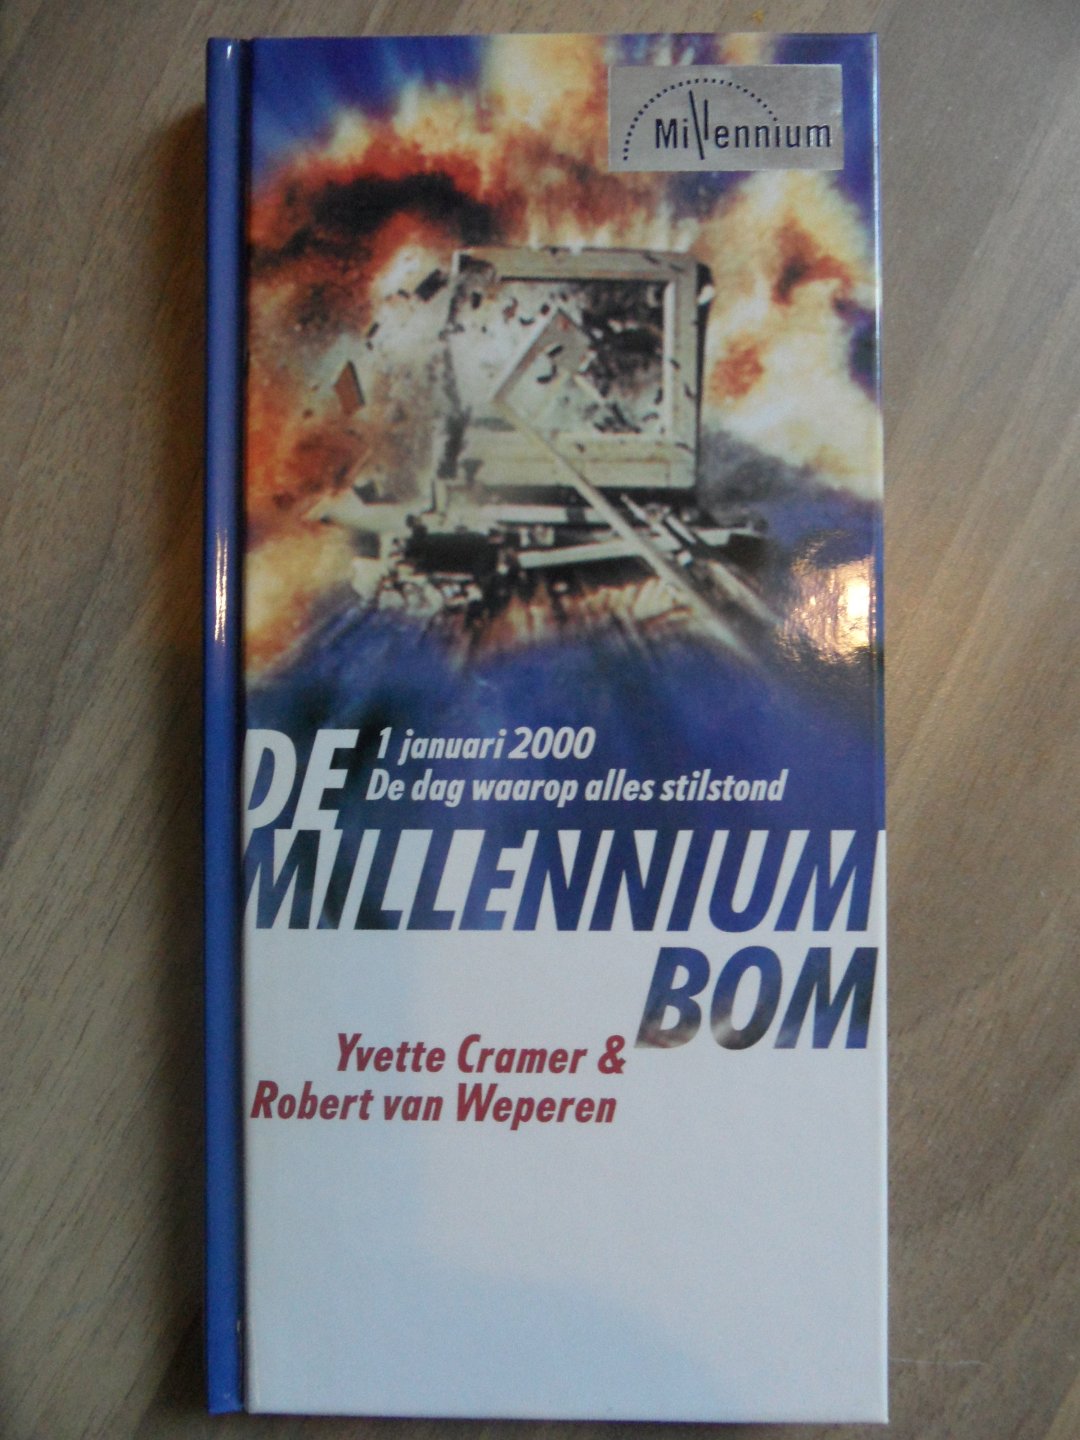 Cramer, Yvette & Weperen, Robert van - De Millenniumbom 1 januari 2000 De dag waarop alles stilstond